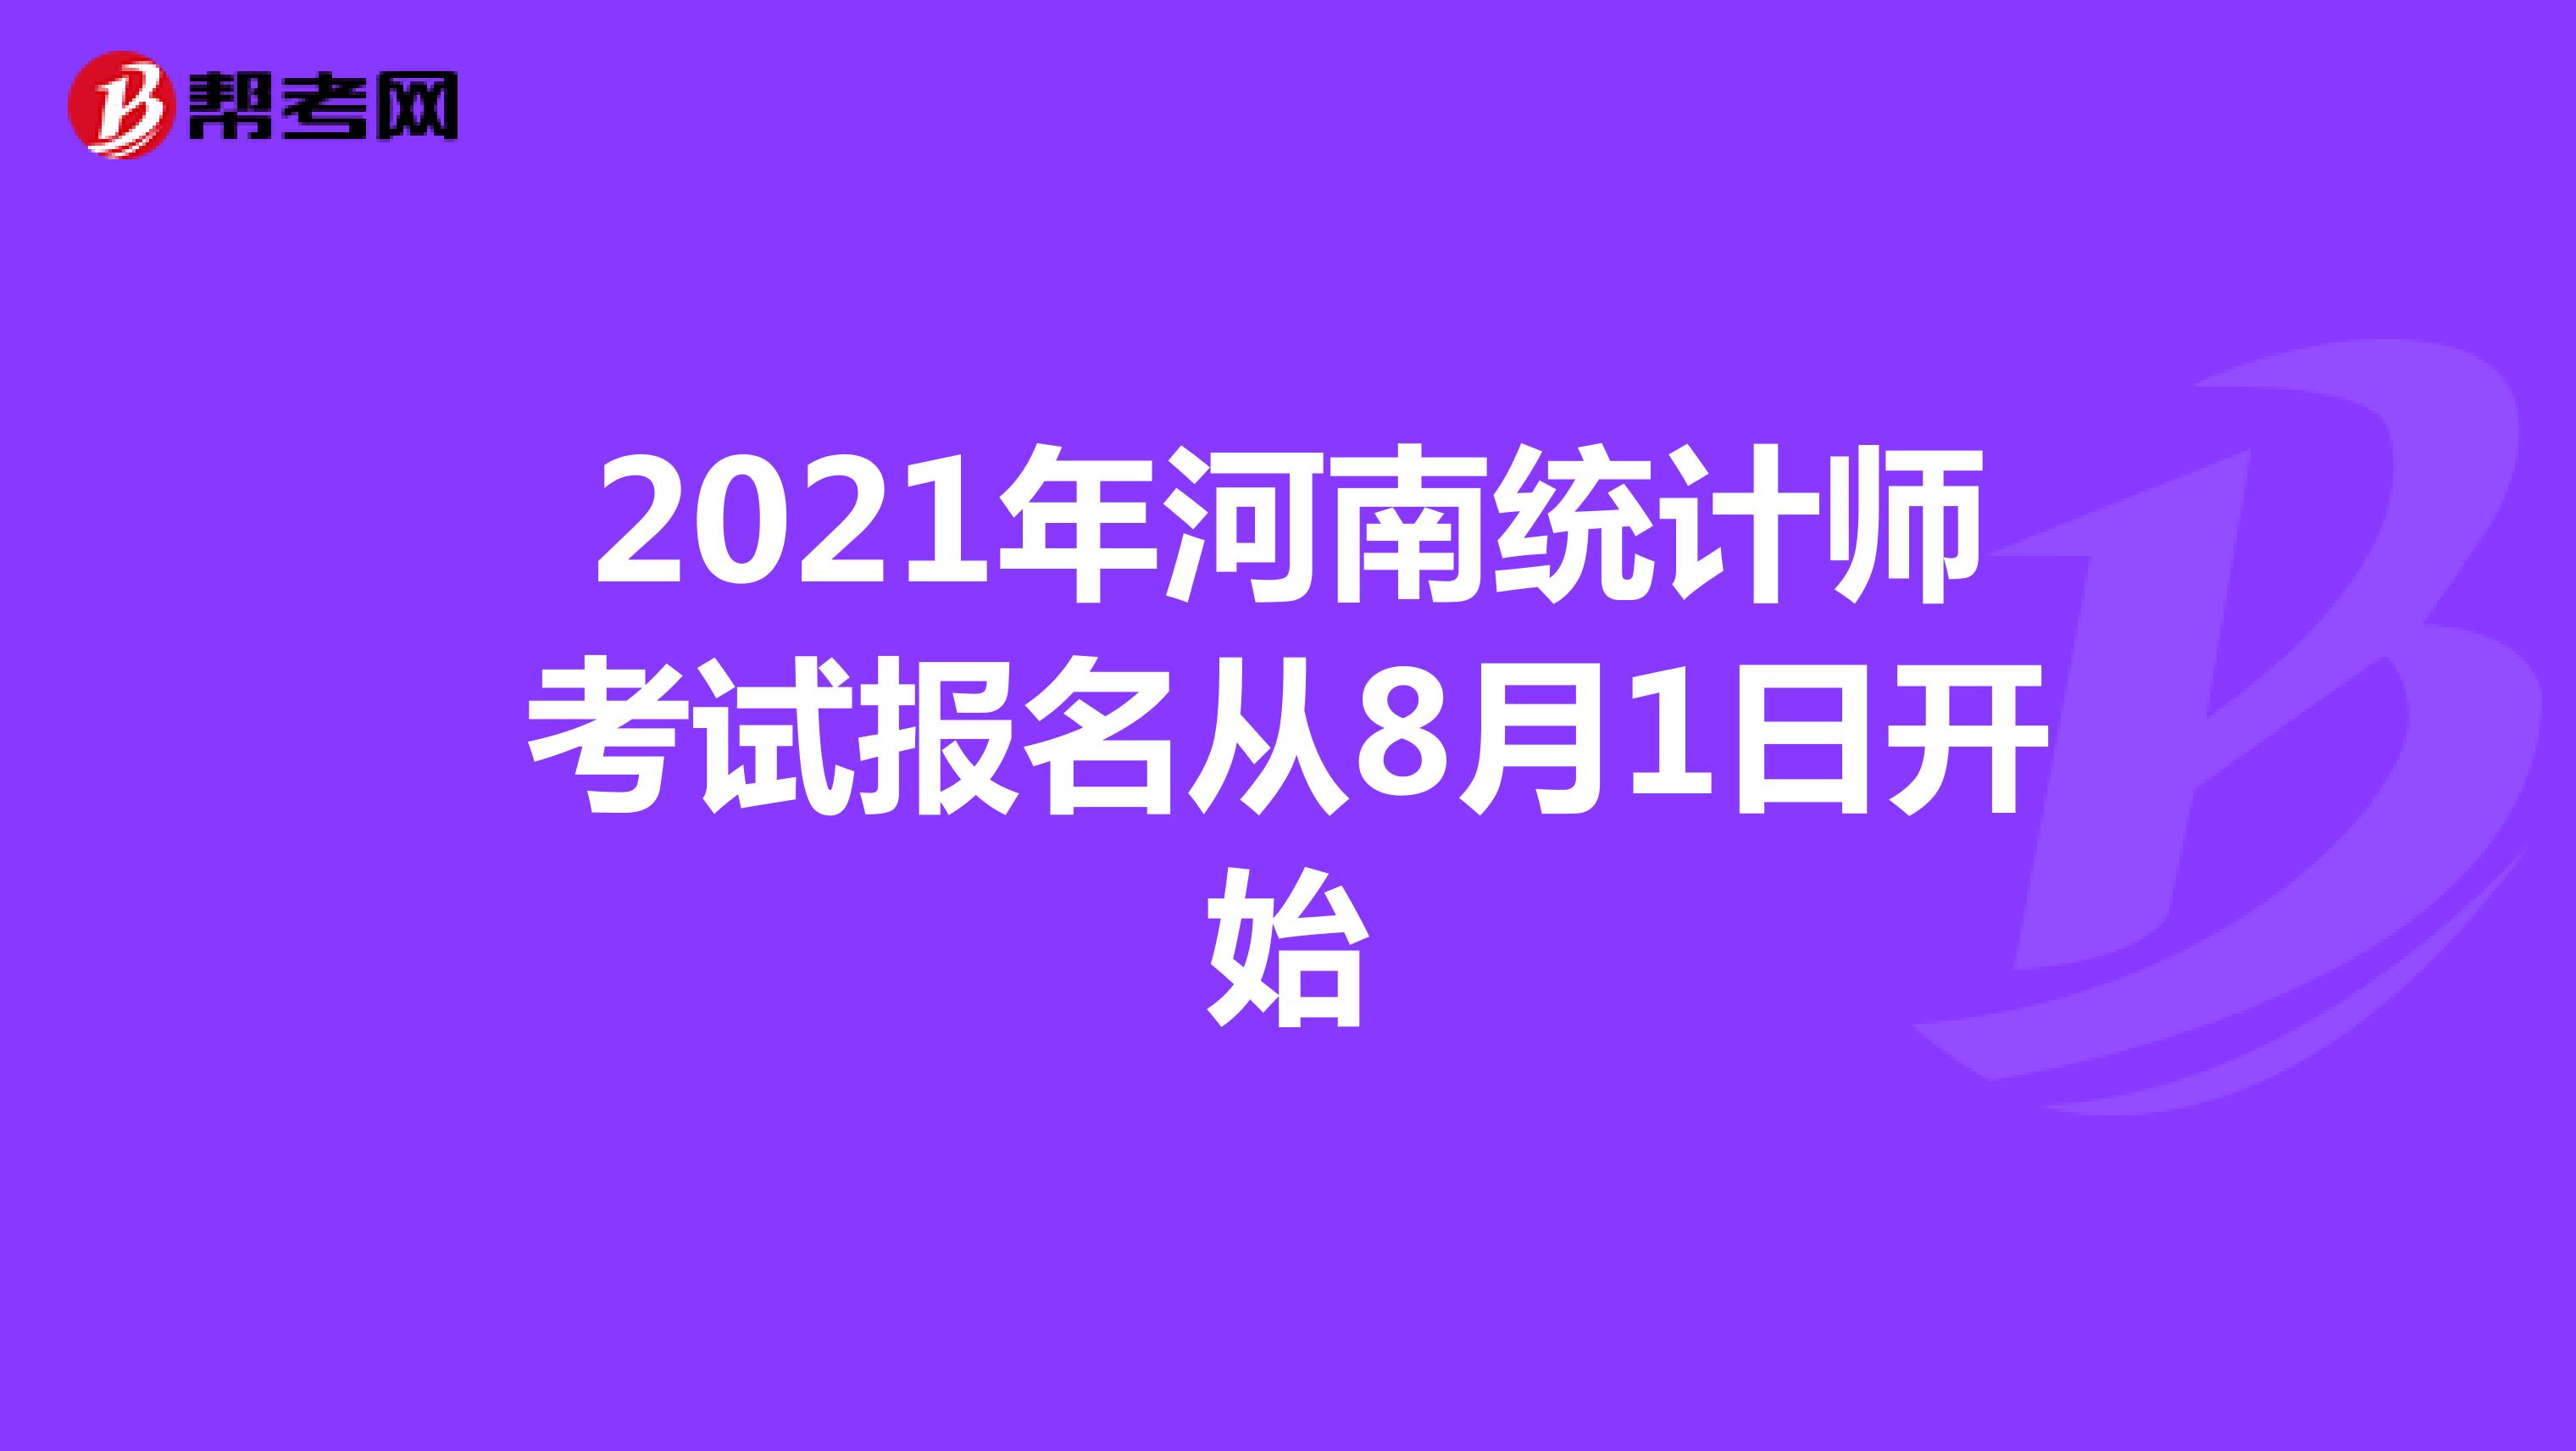 2021年河南统计师考试报名从8月1日开始